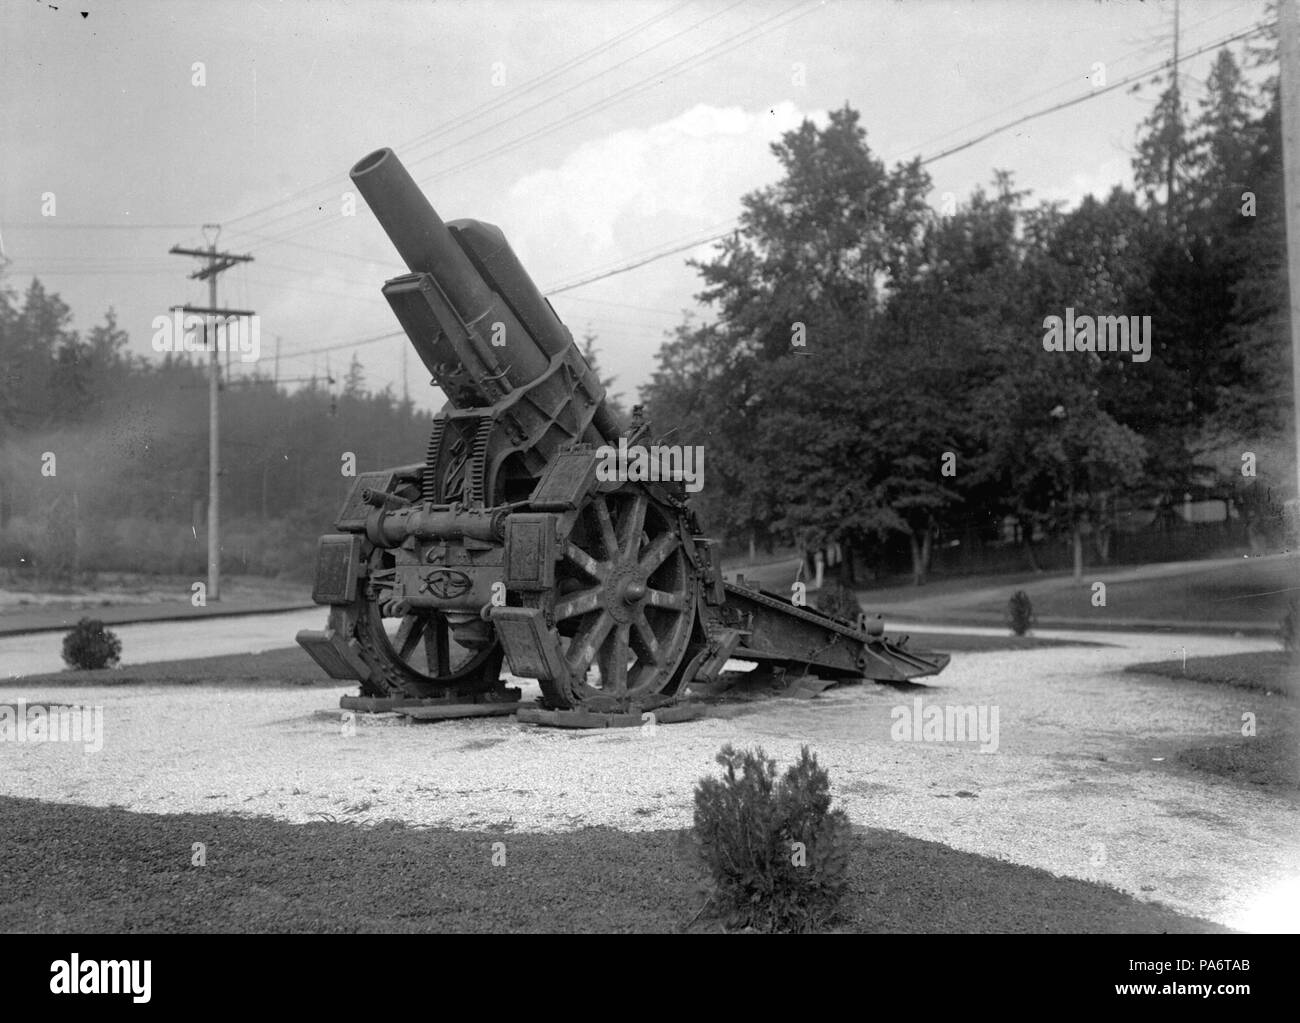 Hình ảnh Morser 16 là những bức ảnh cực kỳ ấn tượng về một loại pháo binh được phát triển vào thế chiến thứ nhất. Đến với bộ sưu tập này, bạn sẽ được chiêm ngưỡng những chi tiết đầy sức mạnh và tinh tế của loại pháo binh này. Hãy cùng khám phá bộ ảnh Morser 16 đầy cuốn hút này.